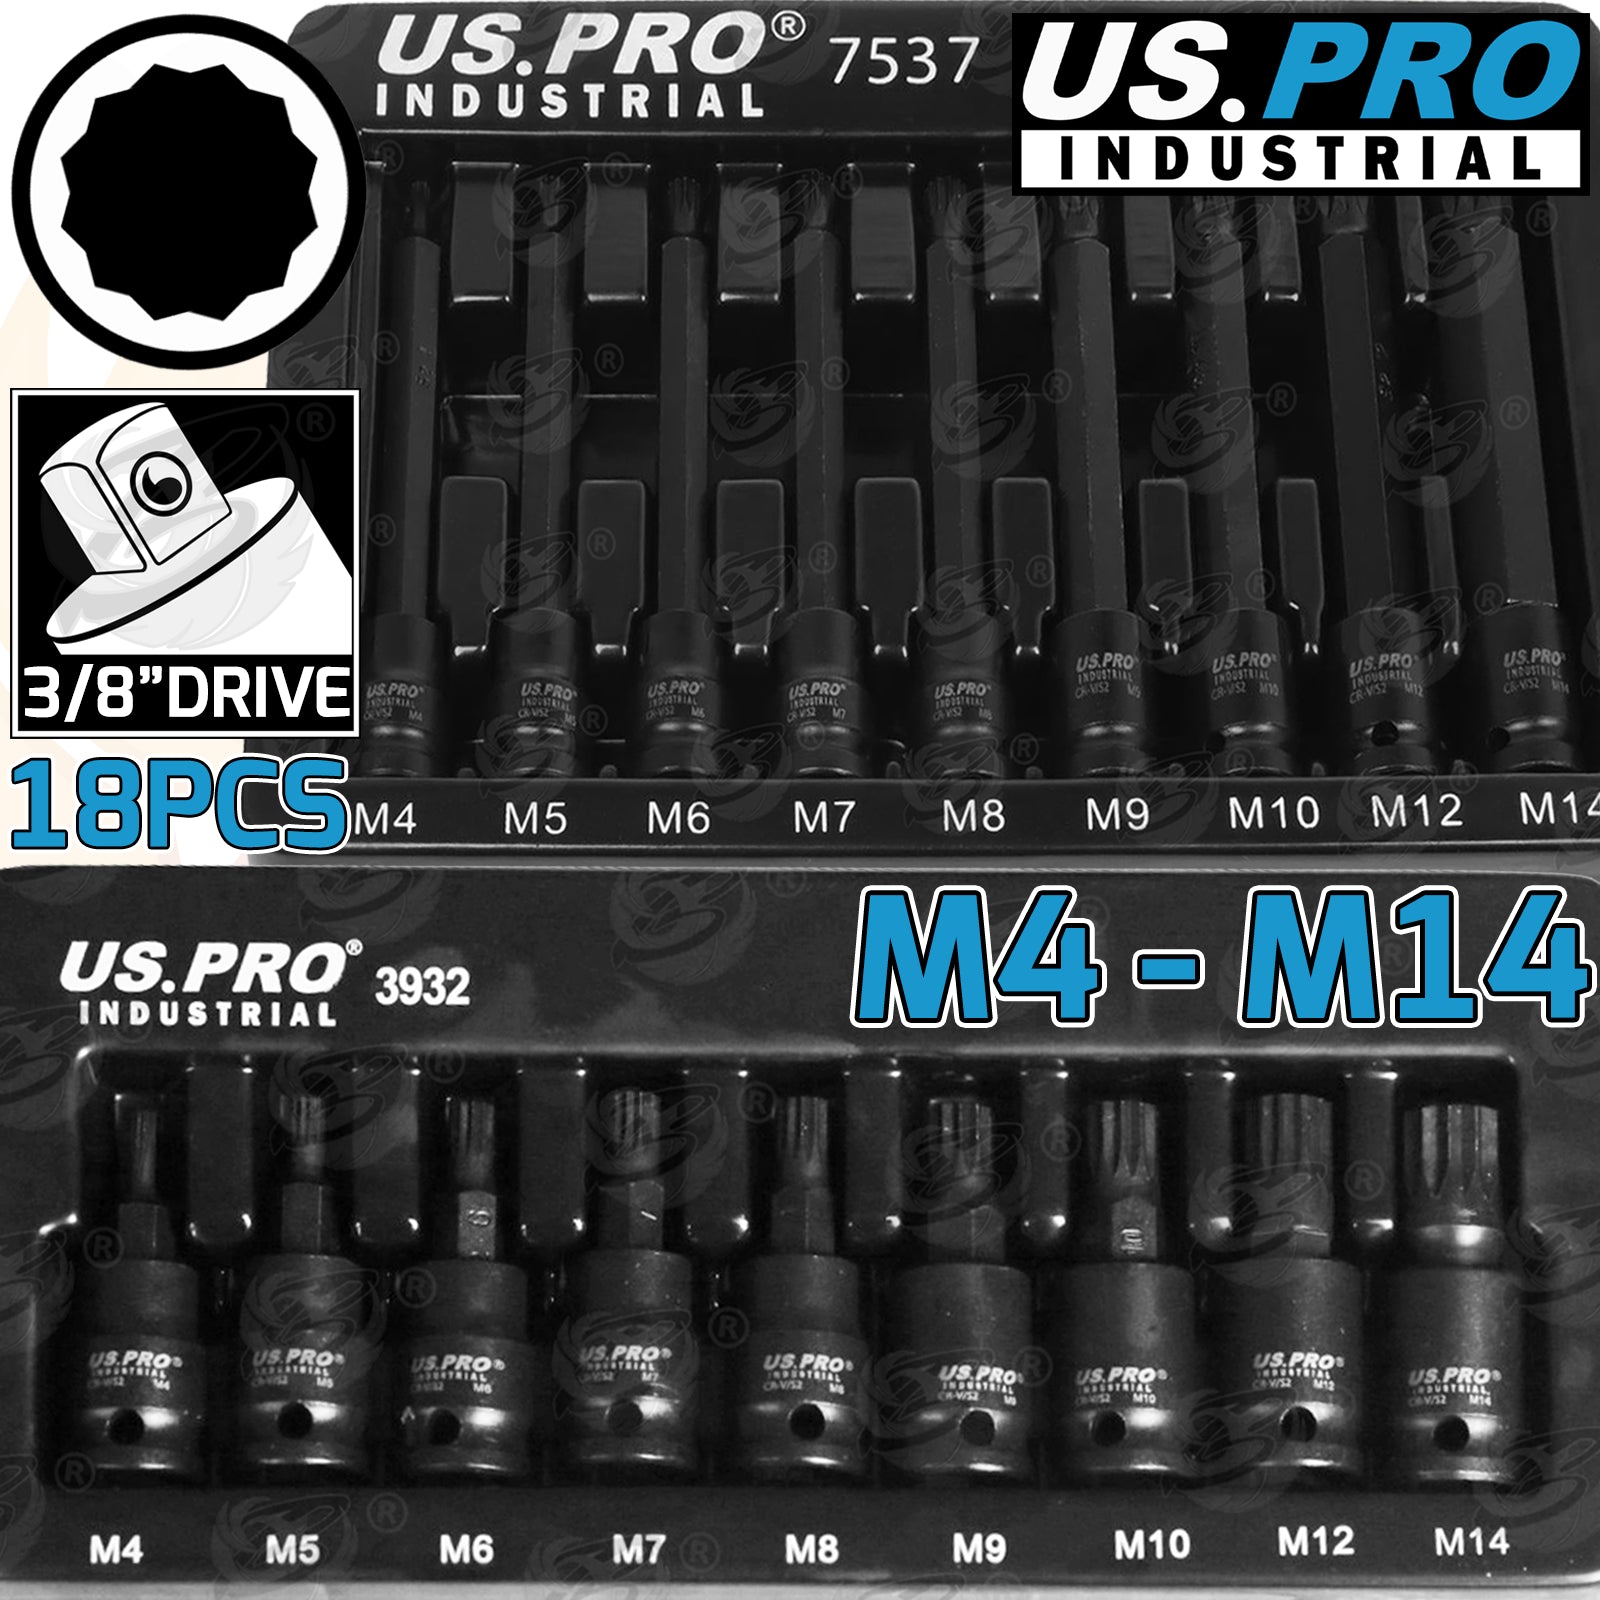 US PRO IMPACT 18PCS 3/8" DRIVE LONG & SHORT SPLINE BIT SOCKET SET M4 - M14